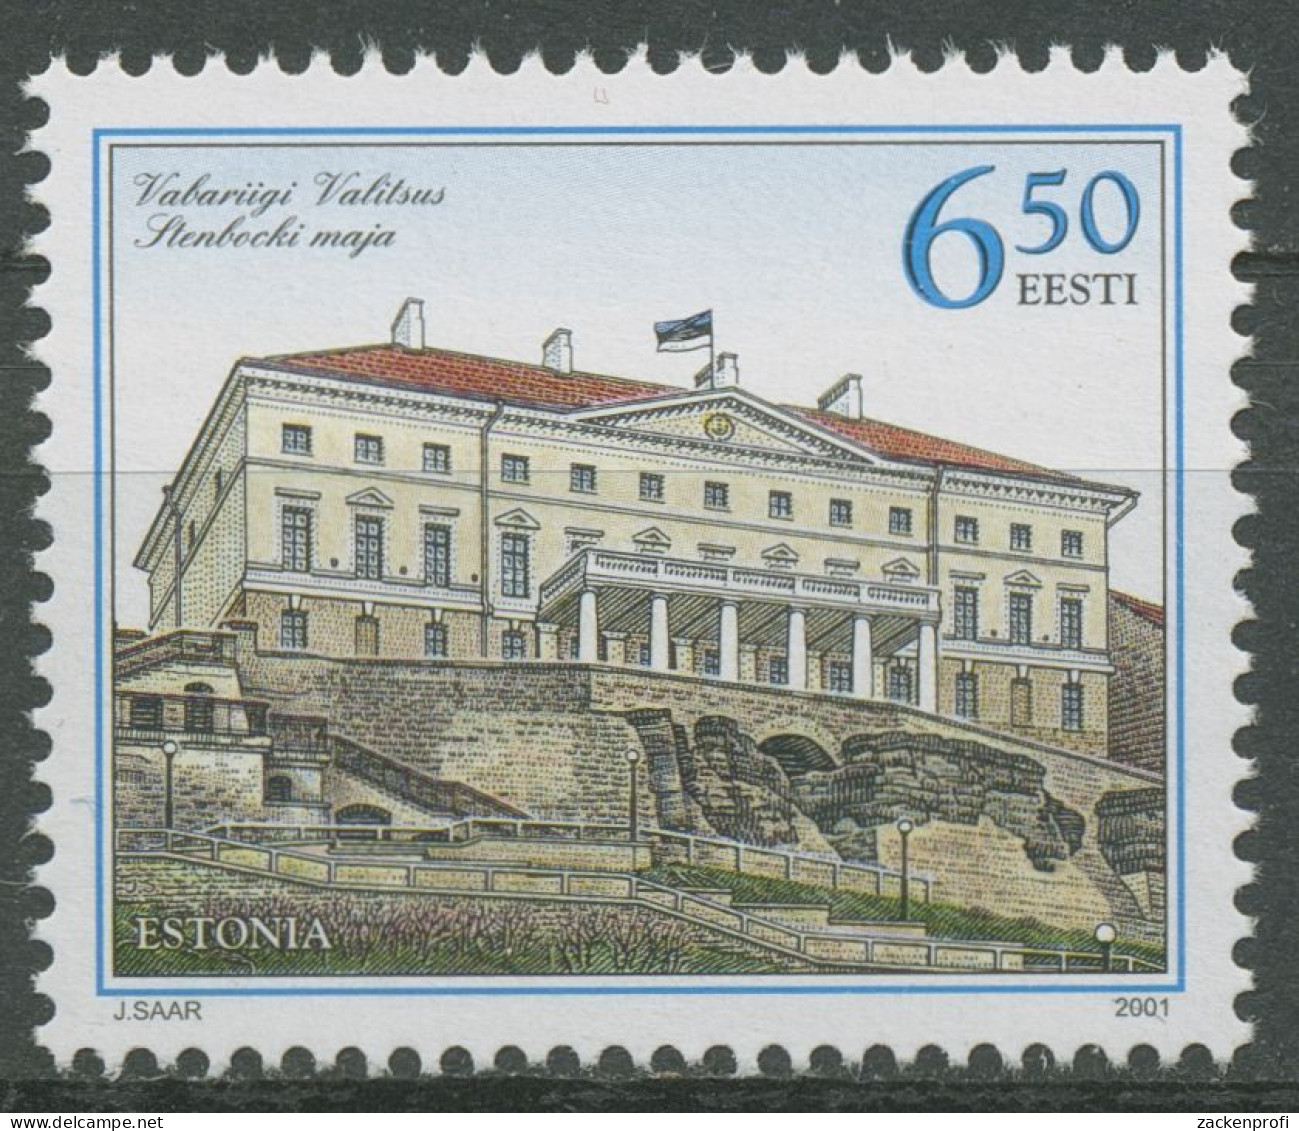 Estland 2001 Regierungssitz Stenbock-Palast Tallin 393 Postfrisch - Estonie